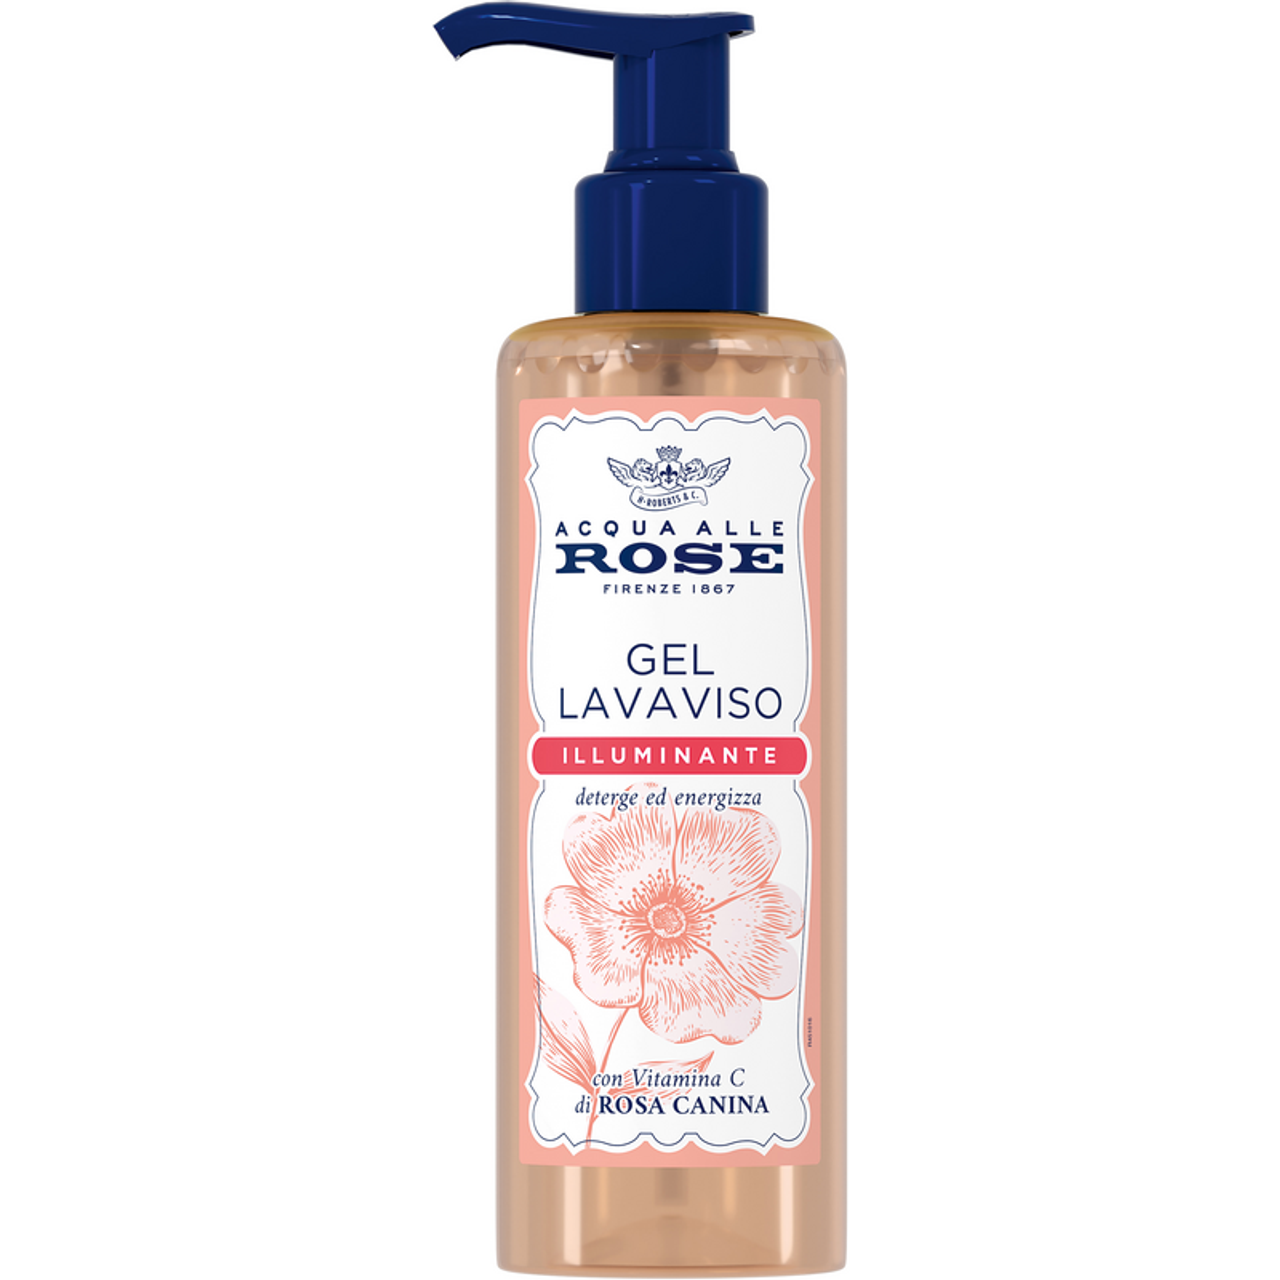 Set Regalo Donna - Acqua di Rosе Purа Monte Nativo (3x200 ml) - 100%  Naturale, con aloe, con acido ialuronico - Regali per lei per la cura della  pelle